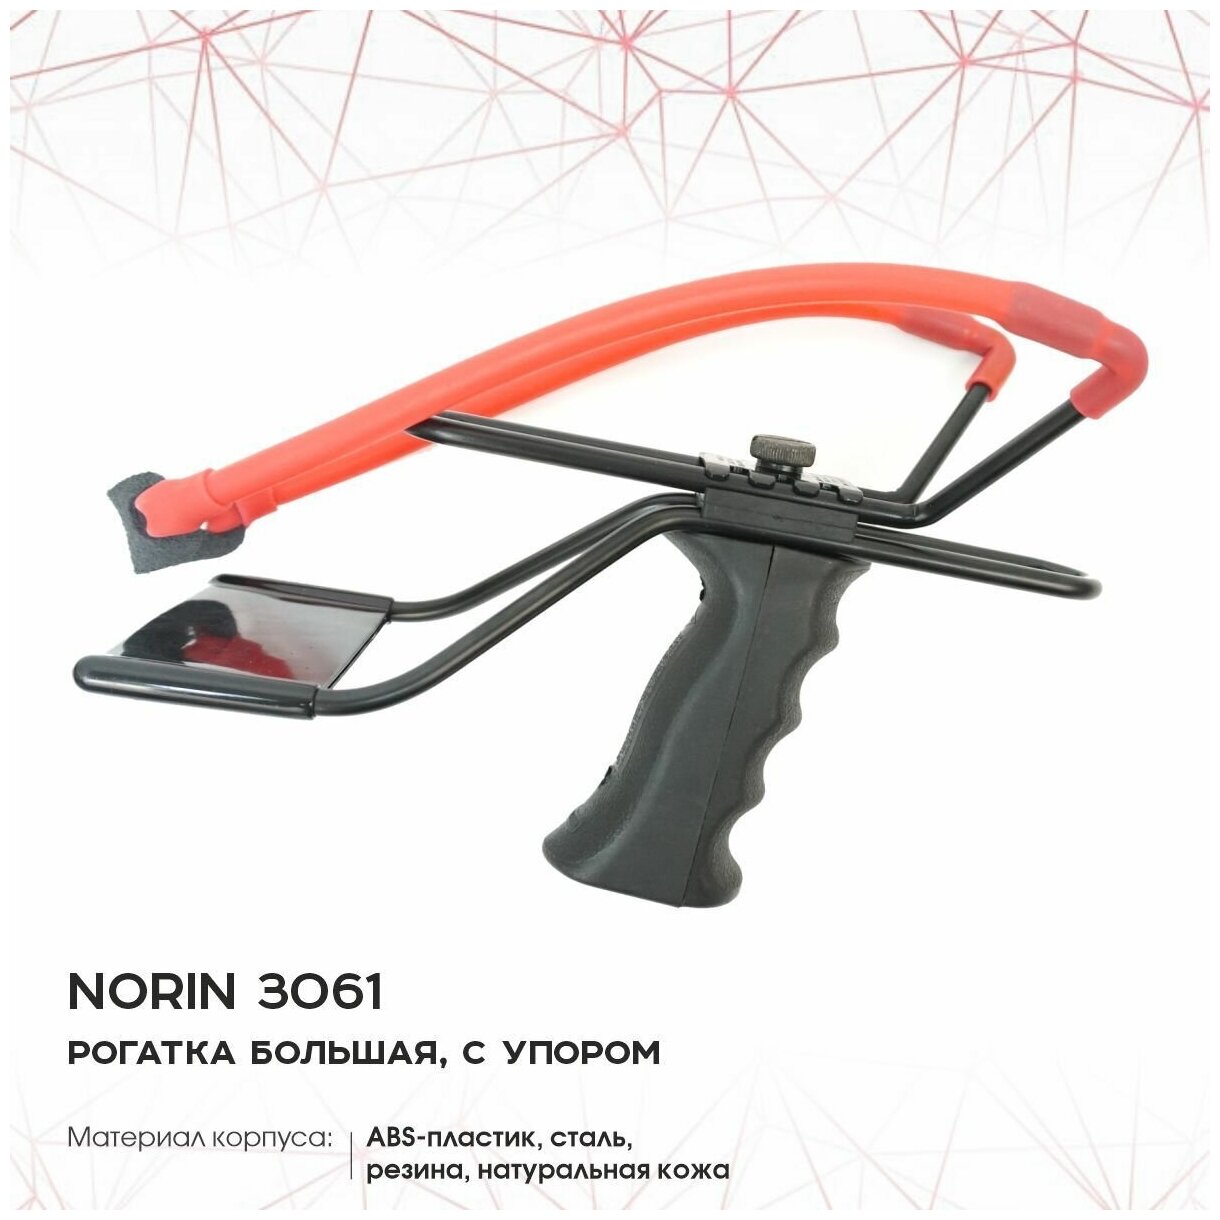 Рогатка "Norin 3061", большая (регулируемая ручка, с упором)